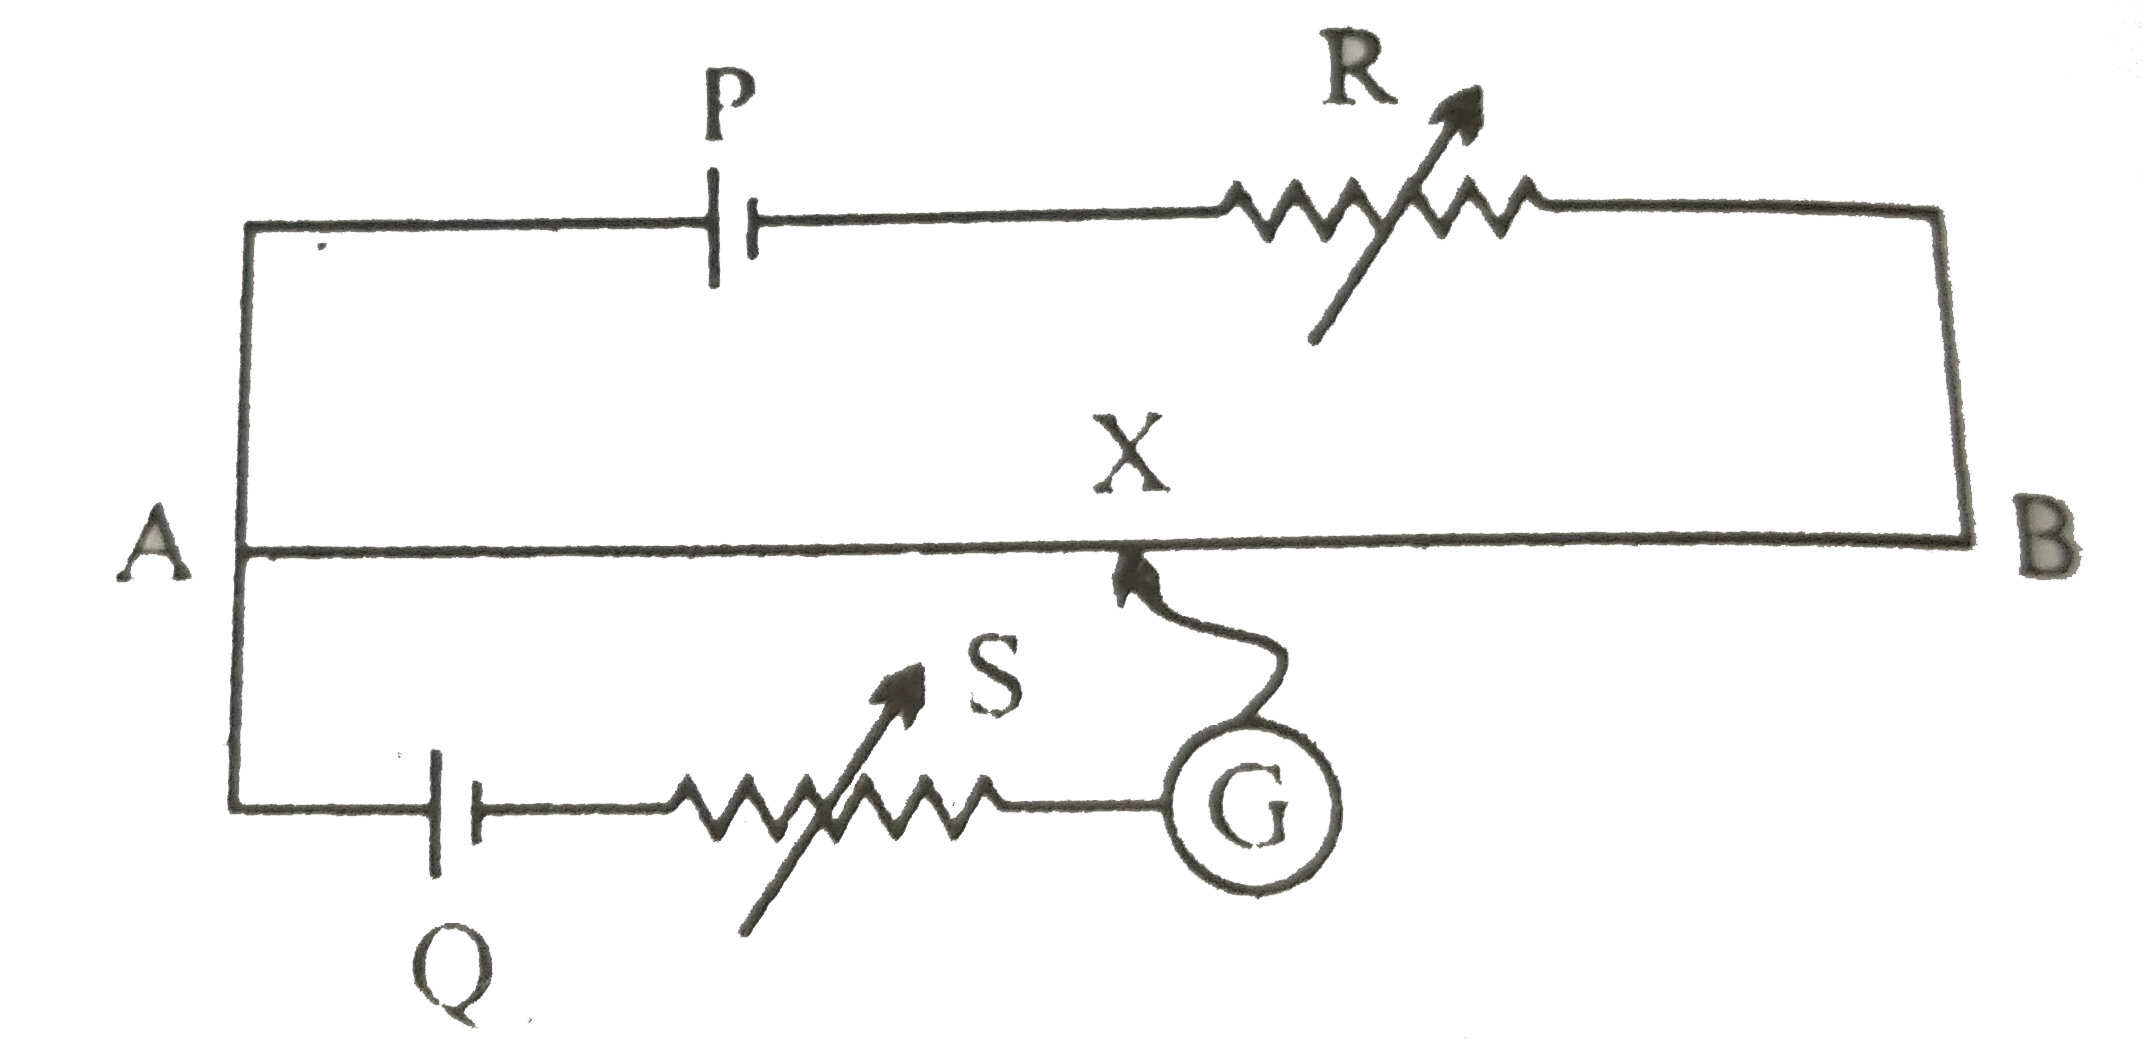 चित्र में एक पोटेशियोमीटर दर्शाया गया है जिसमे एक 2.0V और आंतरिक प्रतिरोध 0.40Omega का कोई सेल, पोटेशियोमीटर के प्रतिरोधक तार AB पर वोल्टता पात बनाए रखता है। कोई मानक सेल जो 1.02V  का अचर विद्युत वाहक बल बनाए रखता है (कुछ mA की बहुत सामान्य धाराओं के लिए) तार की 67.3cm लंबाई पर संतुलन बिंदु देता है। मानक सेल से अति न्यून धारा लेना सुनिश्चित करने के लिए इसके साथ परिपथ में श्रेणी 600kOmega का एक अति उच्च प्रतिरोध इसके साथ संबद्ध किया जाता है, जिसके संतुलन बिंदु प्राप्त होने के निकट लघुपथित कर दिया जाता है। इसके बाद मानक सेल को किसी अज्ञात विद्युत वाहक बल epsilon के सेल से प्रतिस्थापित कर दिया जाता है जिससे संतुलन बिंदु तार की 82.3cm लंबाई पर प्राप्त होता है।      क्या परिचालक सेल के आंतरिक प्रतिरोध से संतुलन बिंदु प्रभावित होता है?